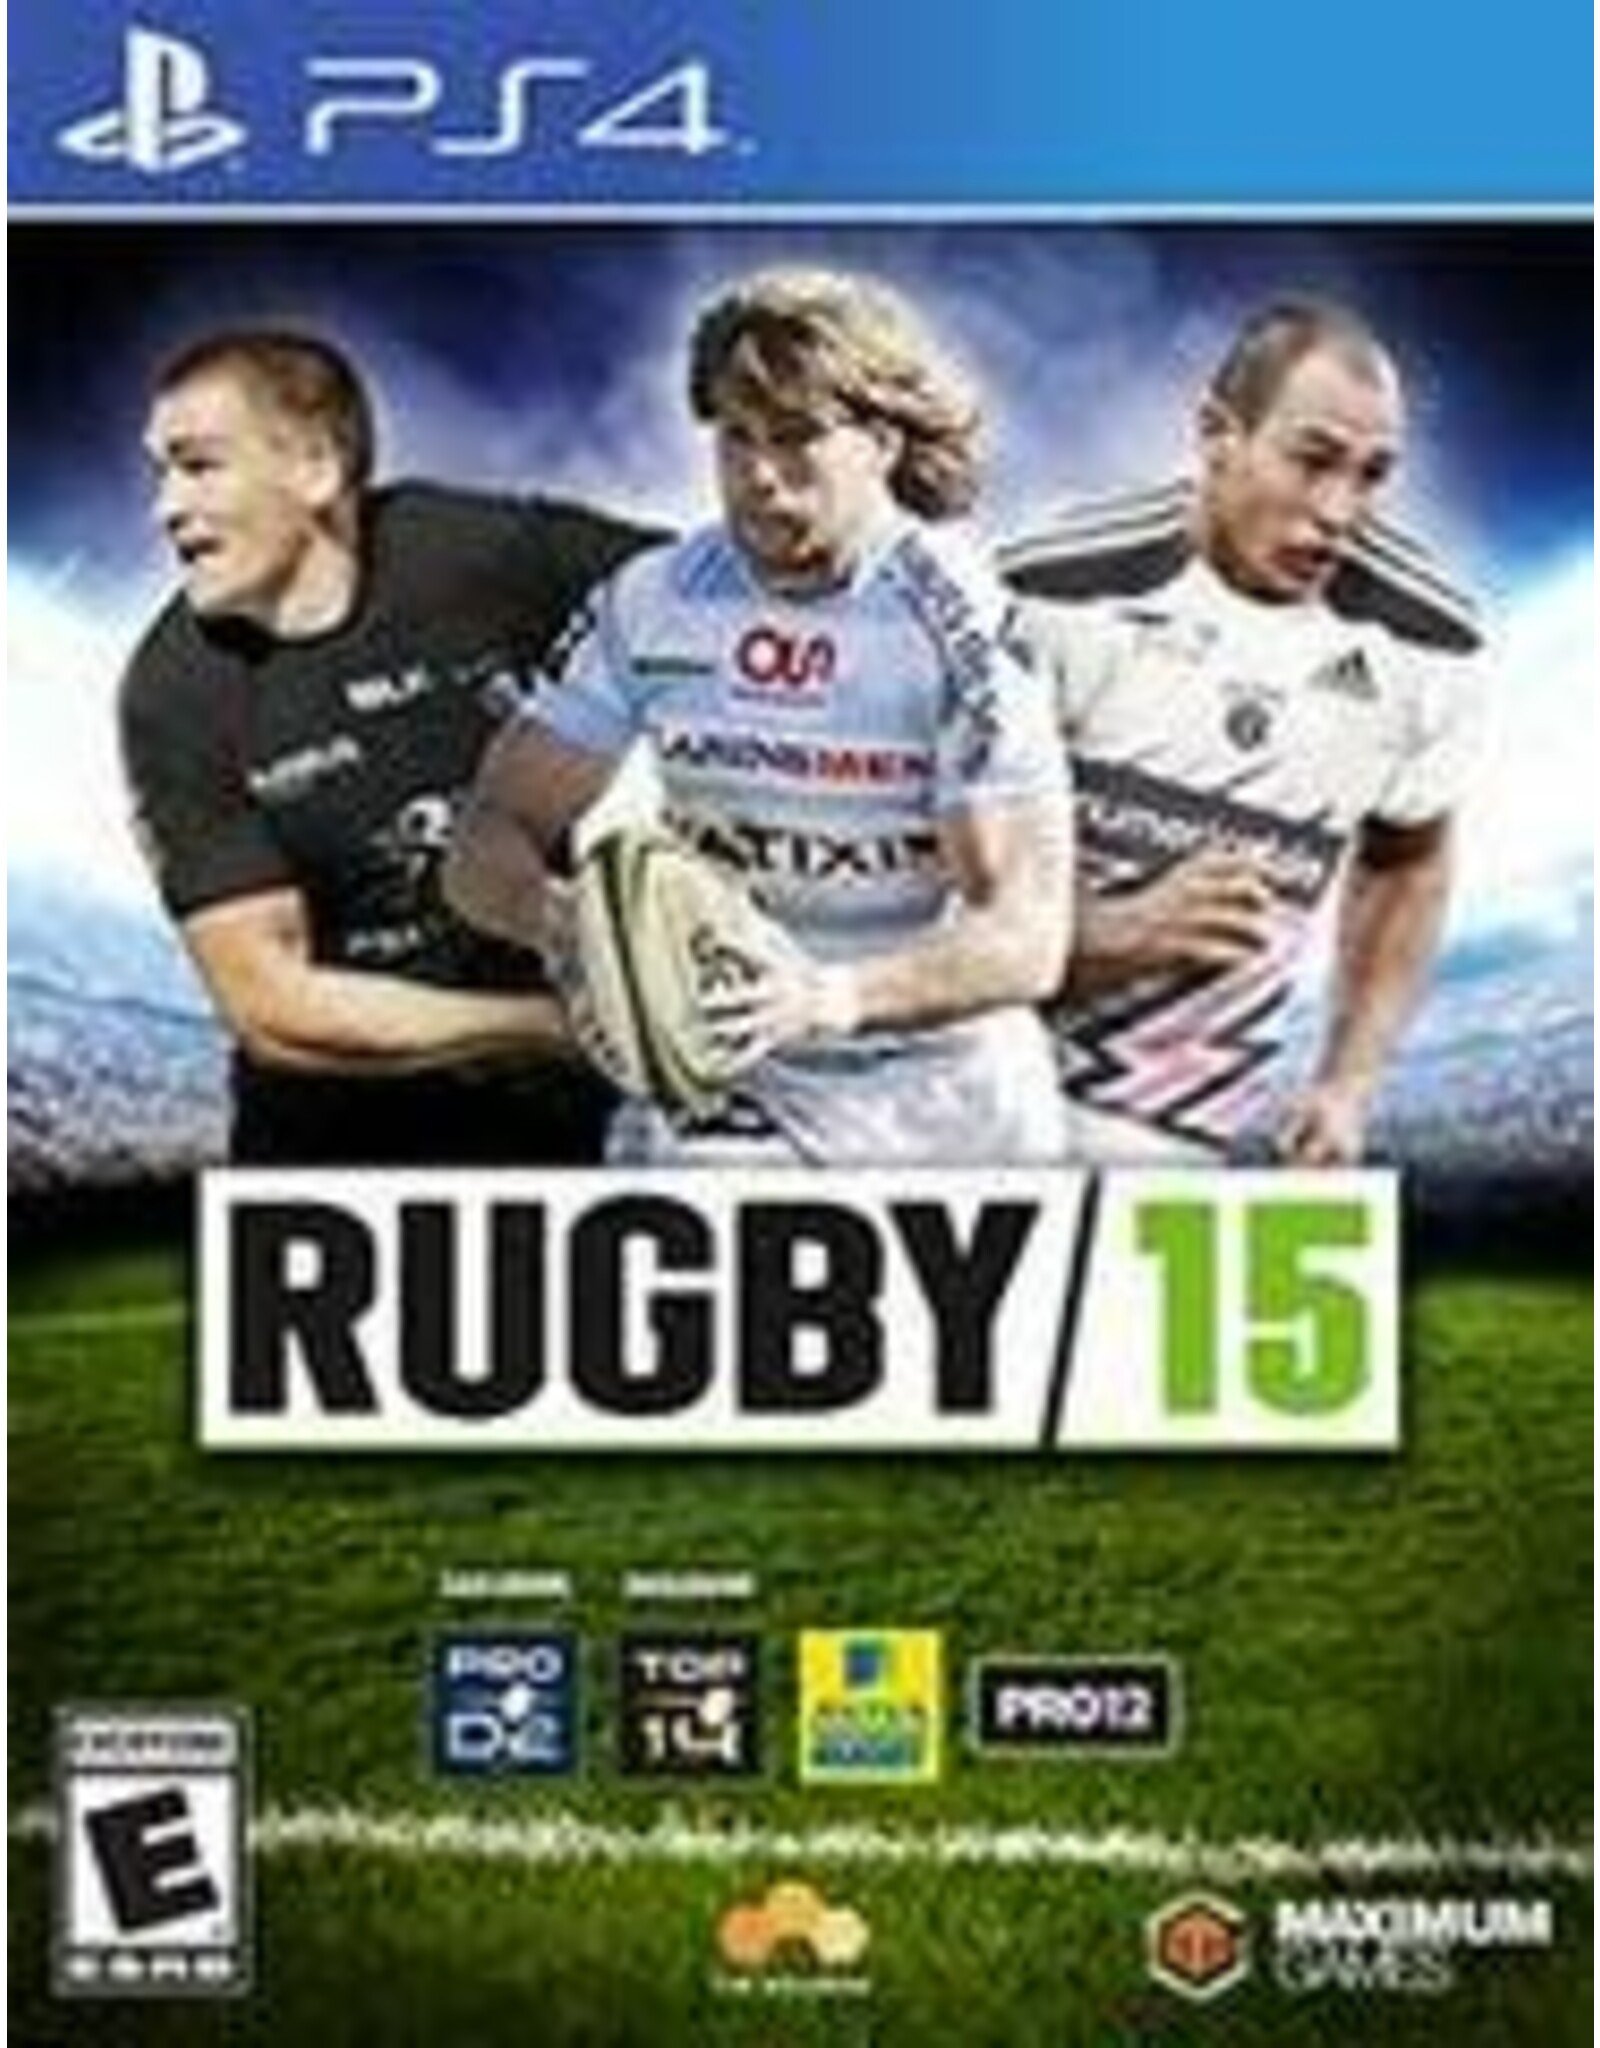 Playstation 4 Rugby 15 (CiB)